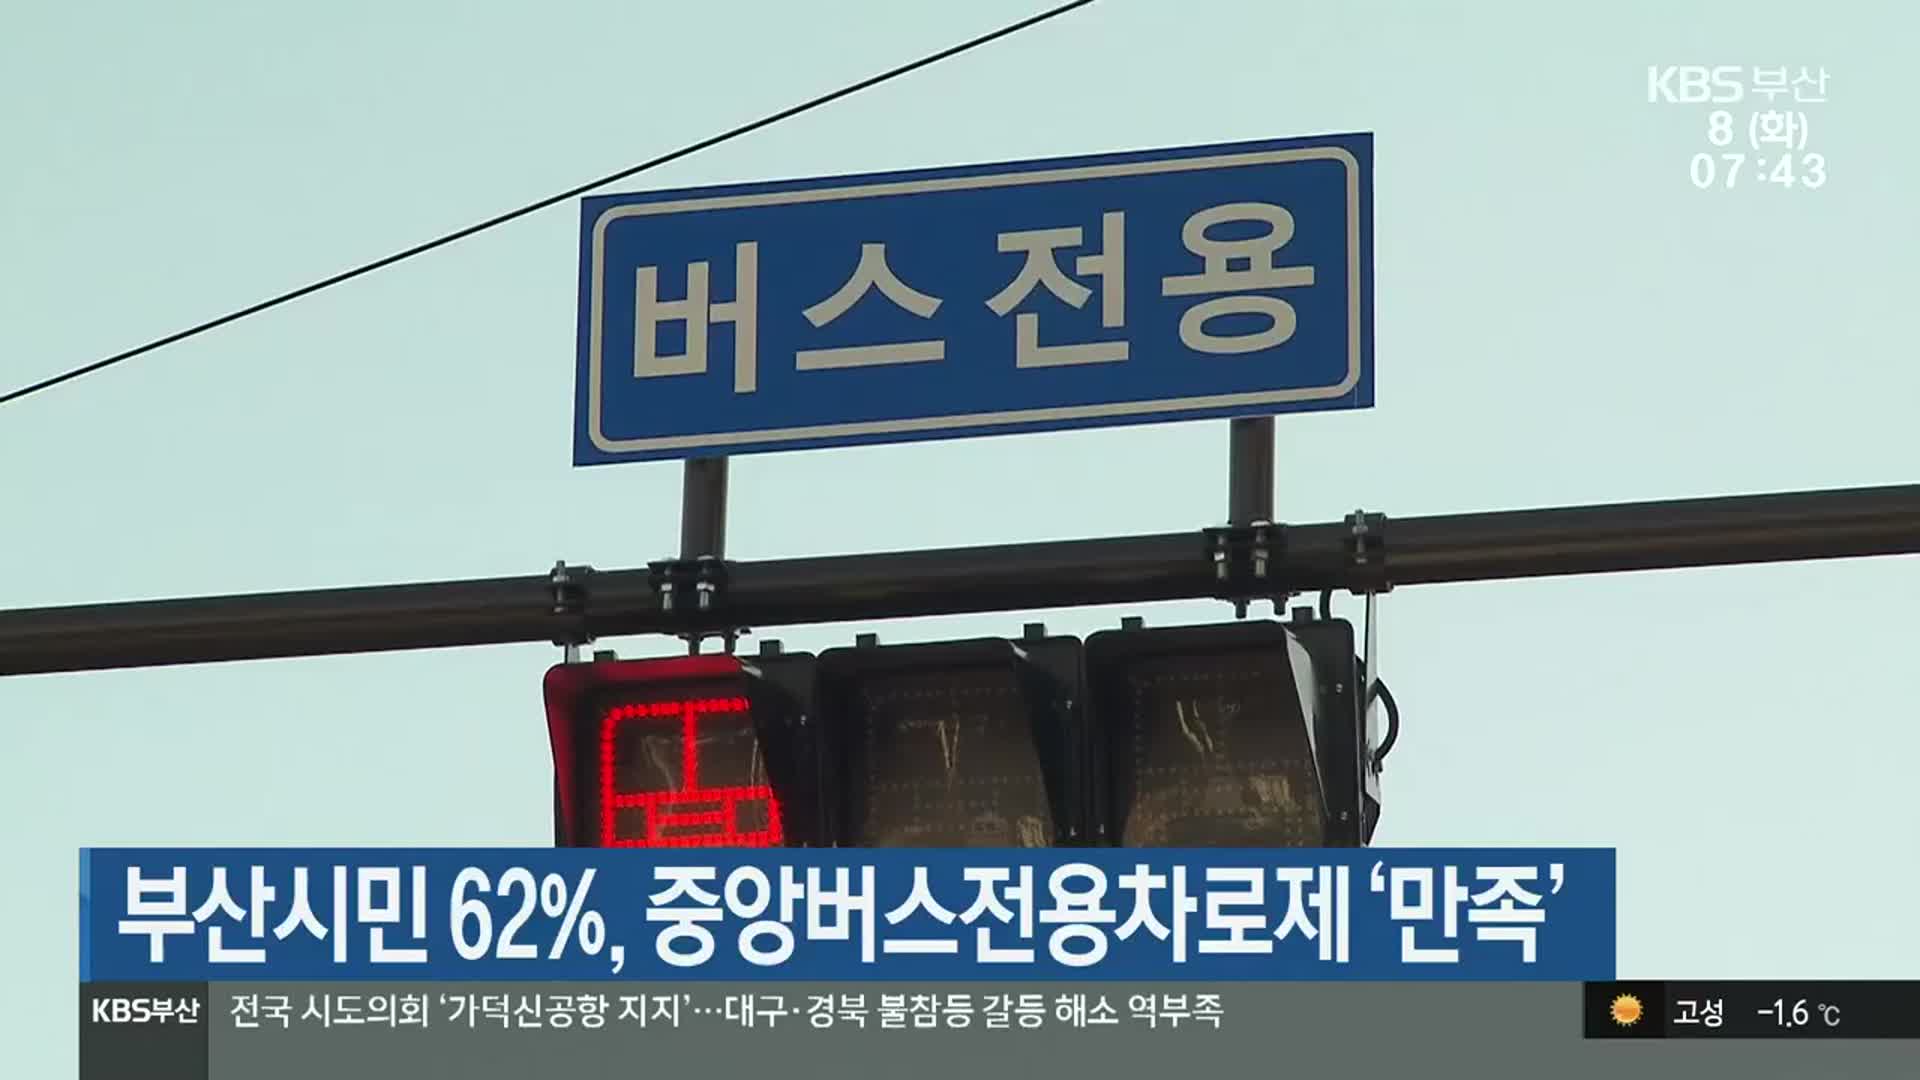 부산시민 62%, 중앙버스전용차로제 ‘만족’